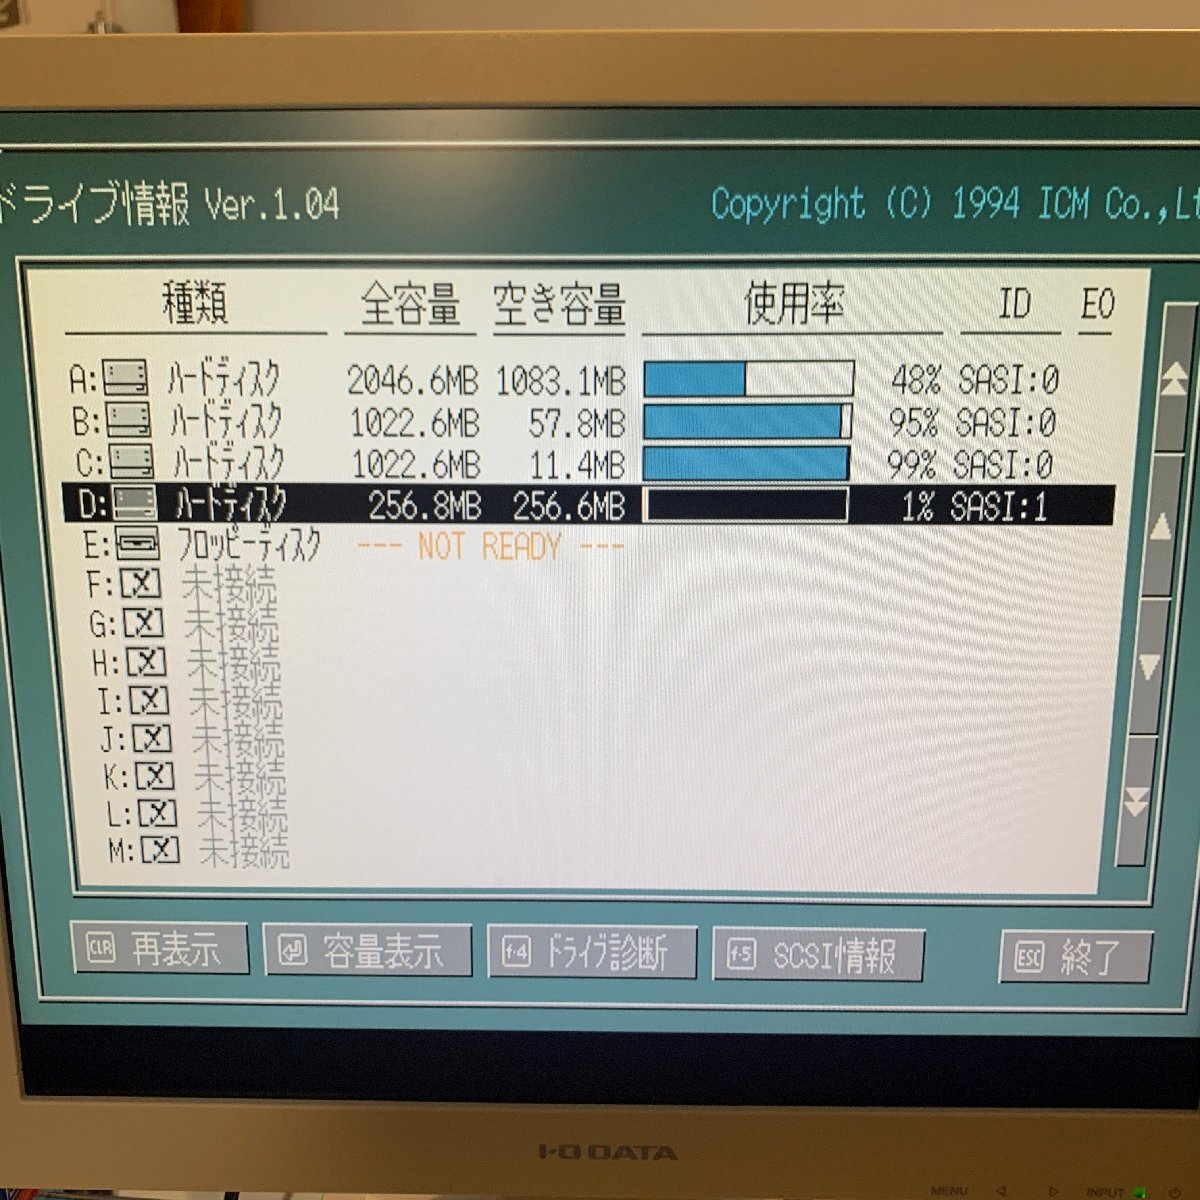 K903 IBM DHAA-2270 ２.５インチハードディスクドライブ 270MB 動作確認済の画像4